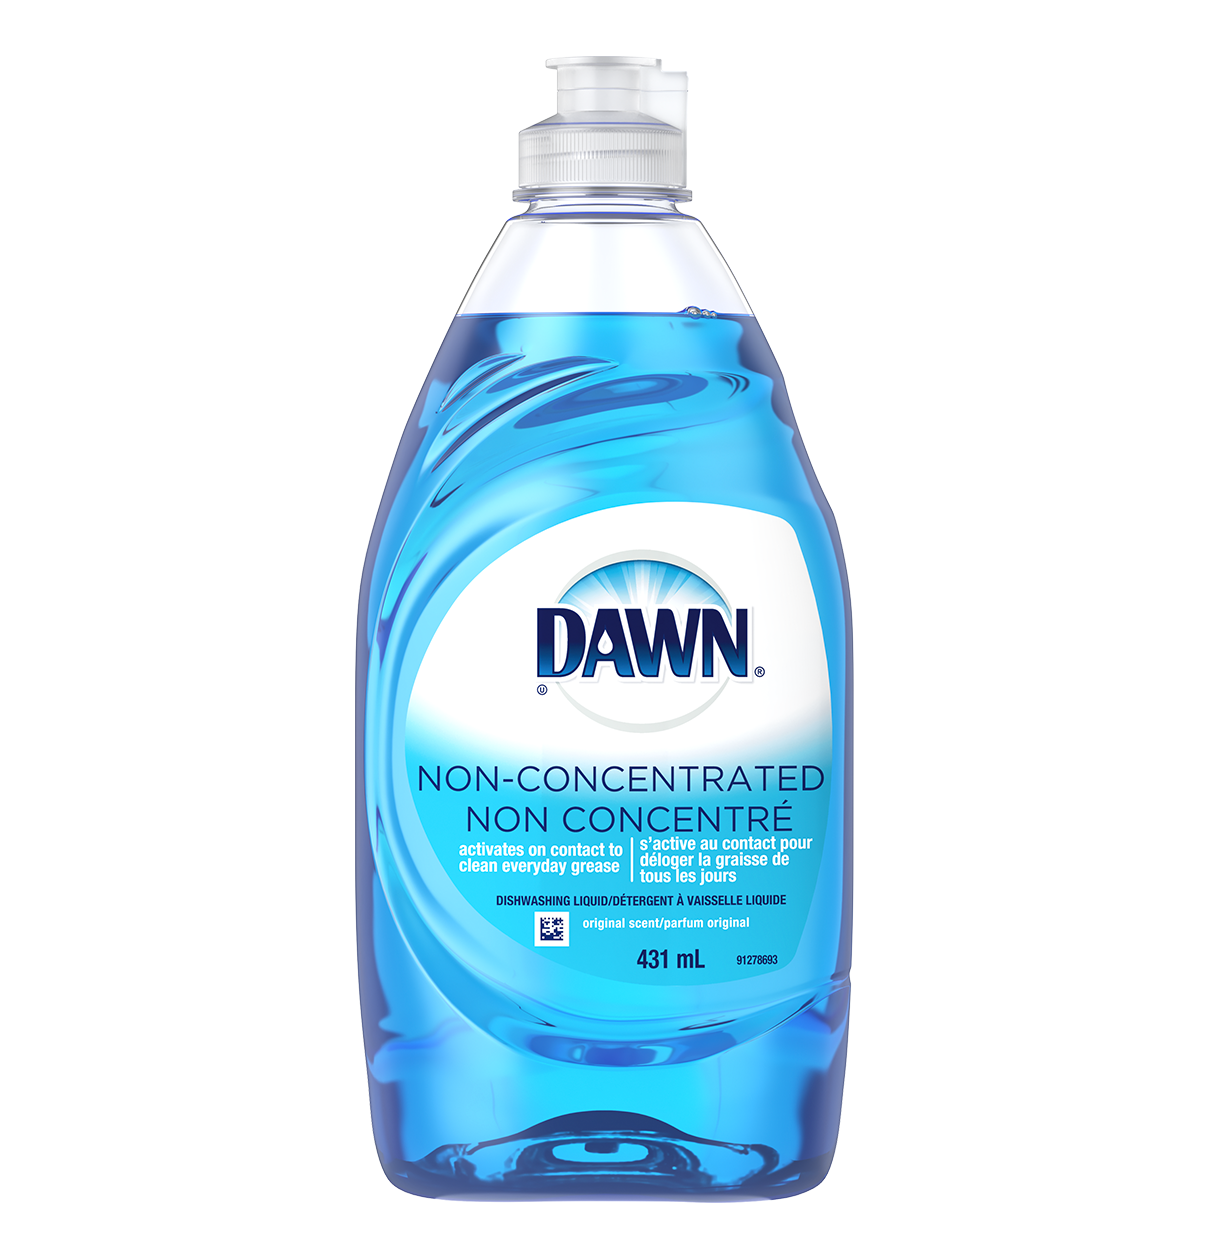 Dawn Non-concentrated Dishwashing Liquid, Original Scent